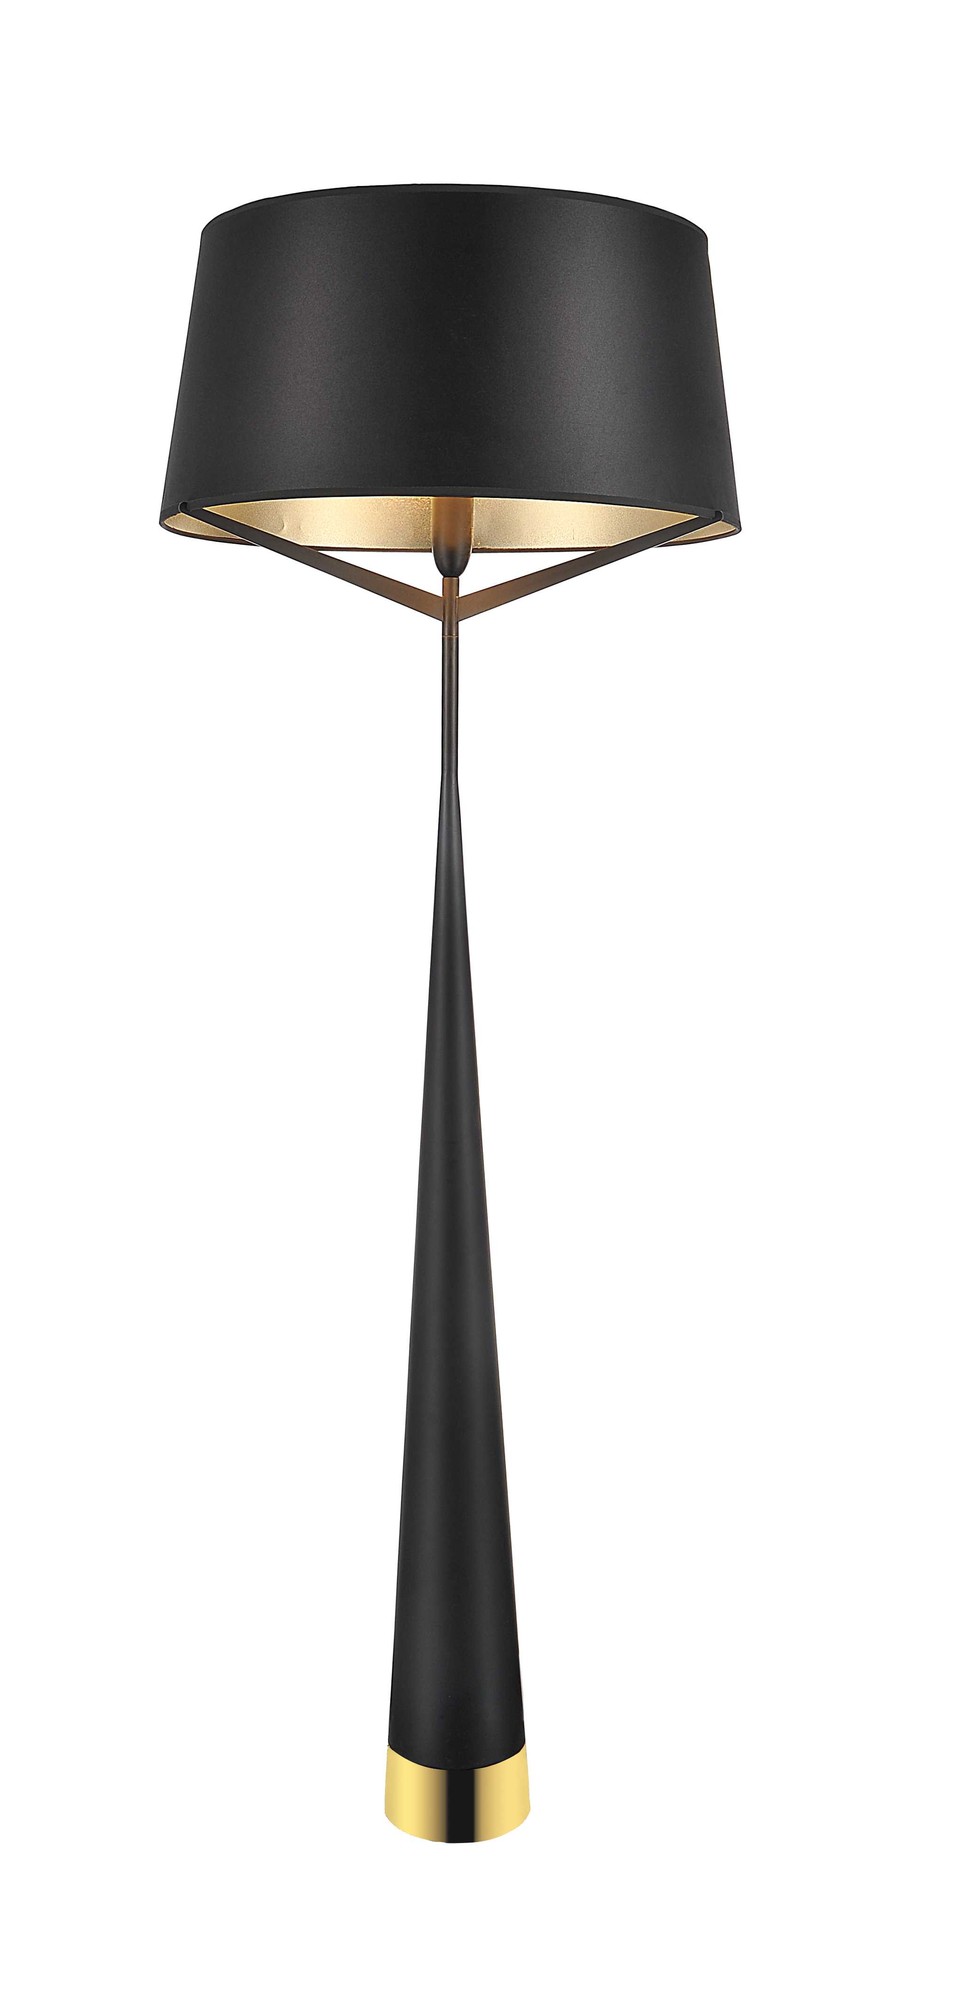 24" X 24" X 67" Black Steel Floor Lamp